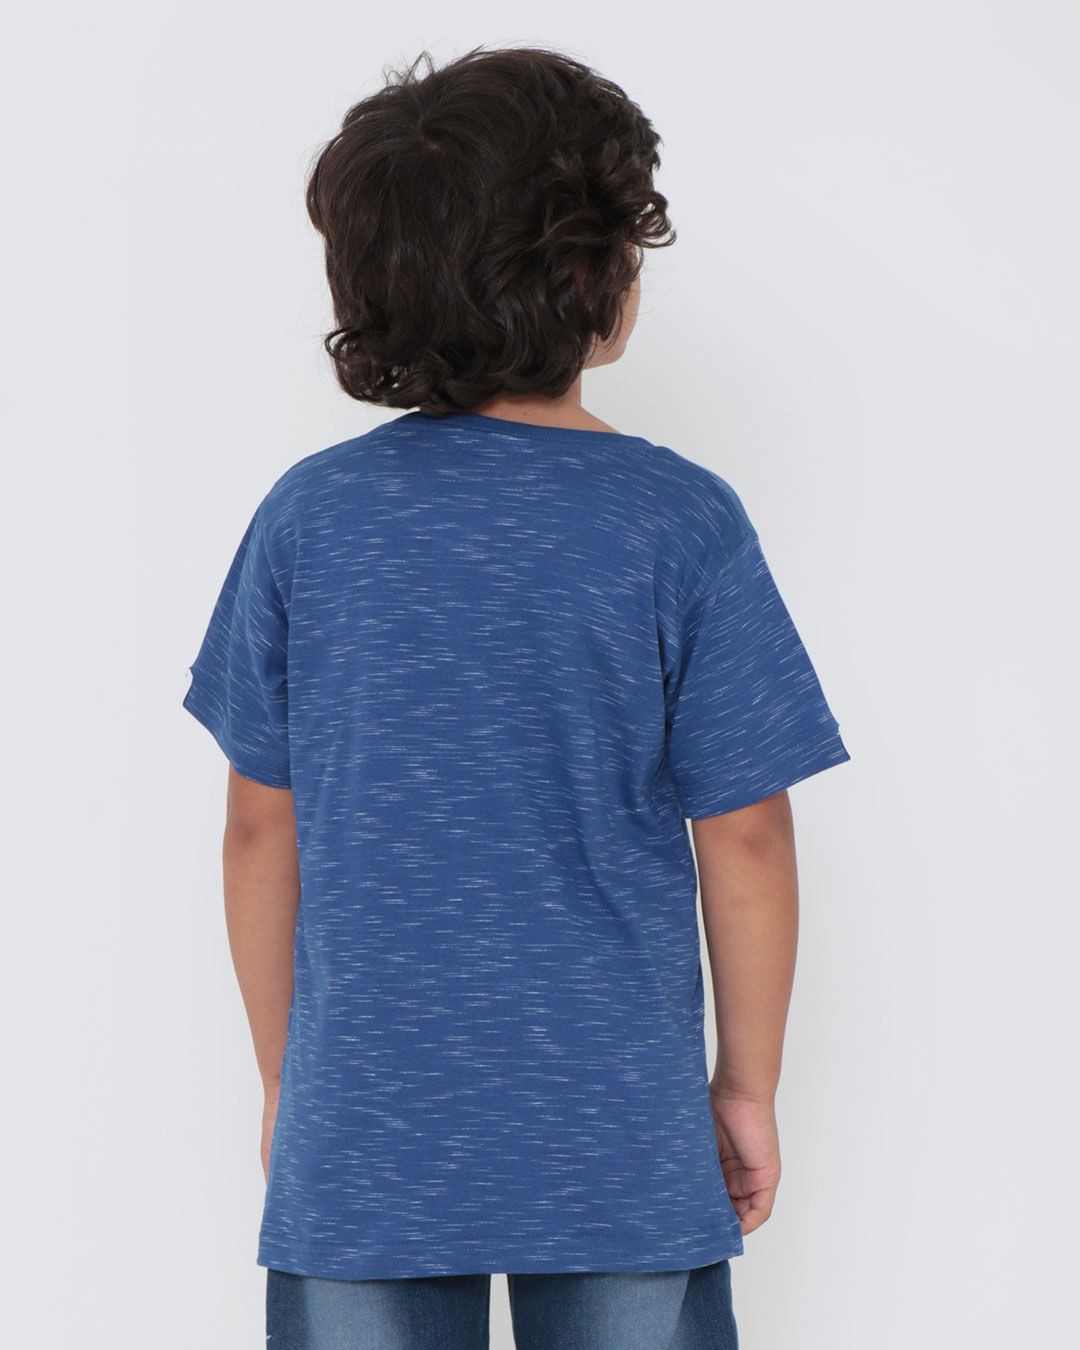 Camiseta-29828-Mc-M410-Stre---Azul-Medio